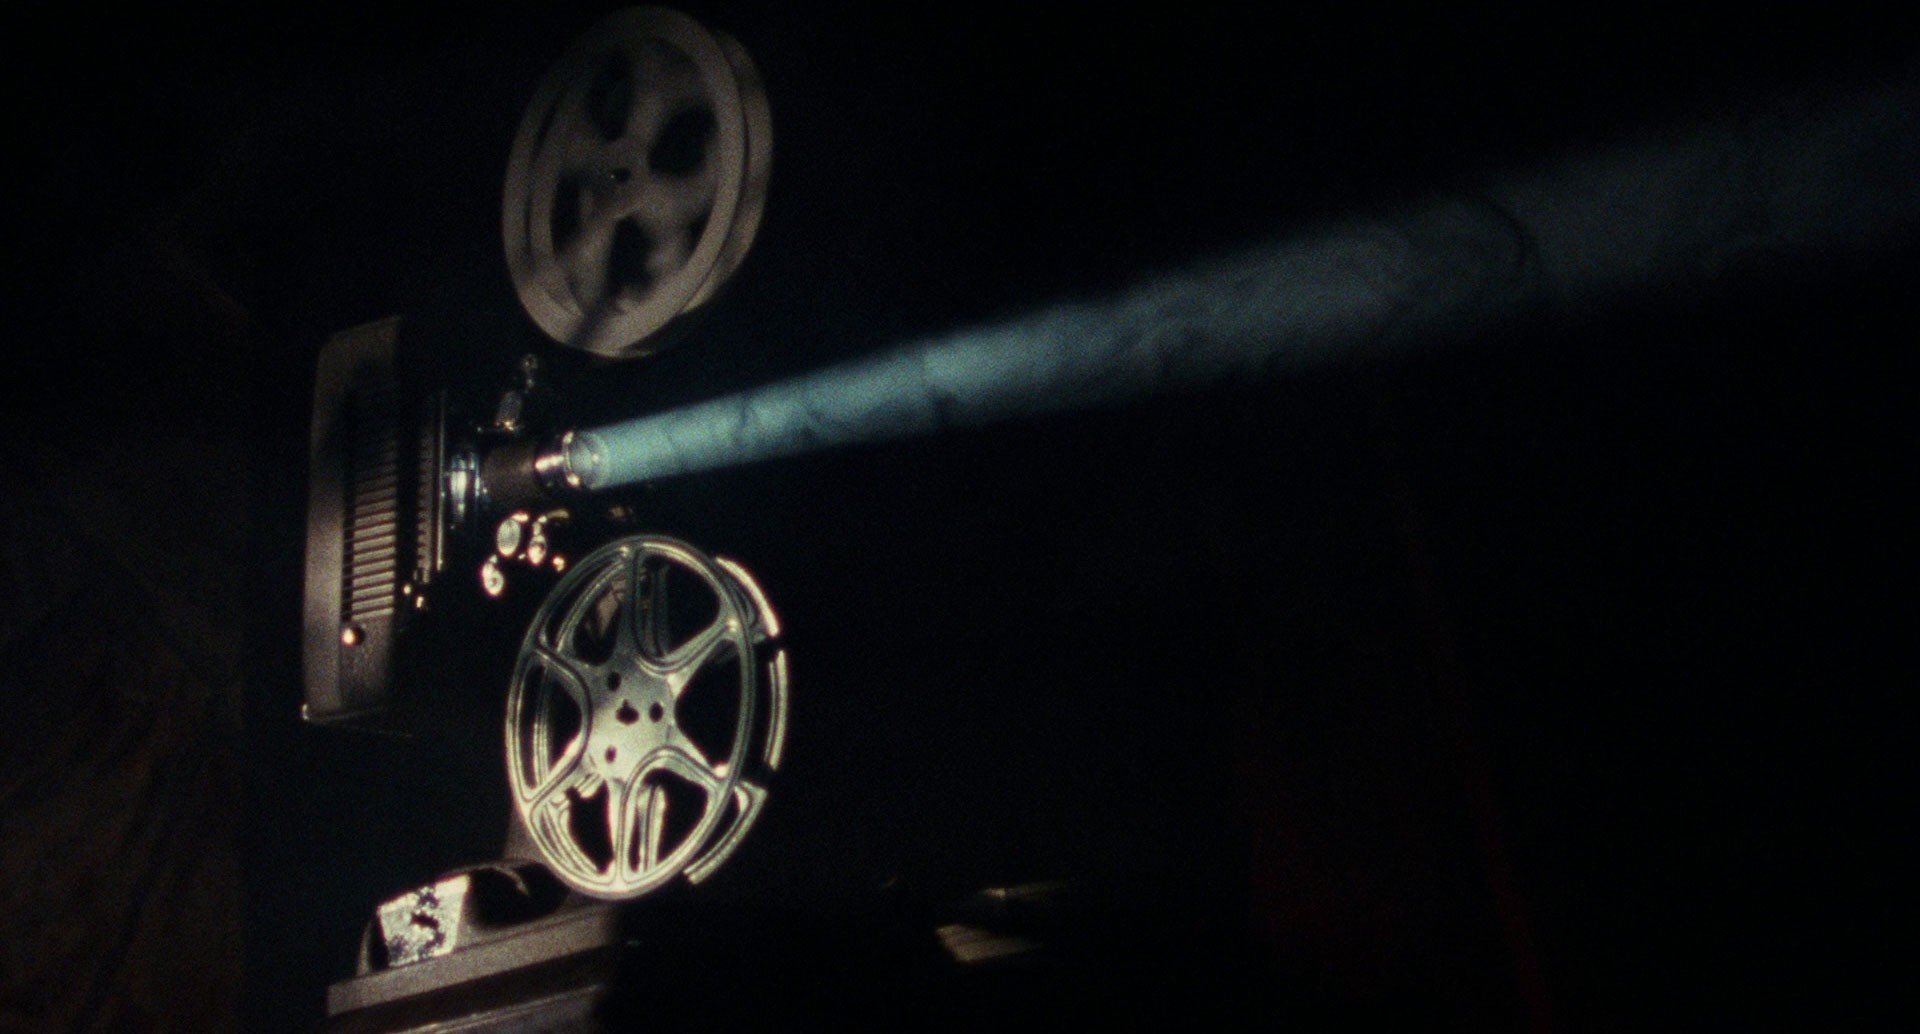 film wallpaper,light,darkness,wheel,automotive wheel system,spoke